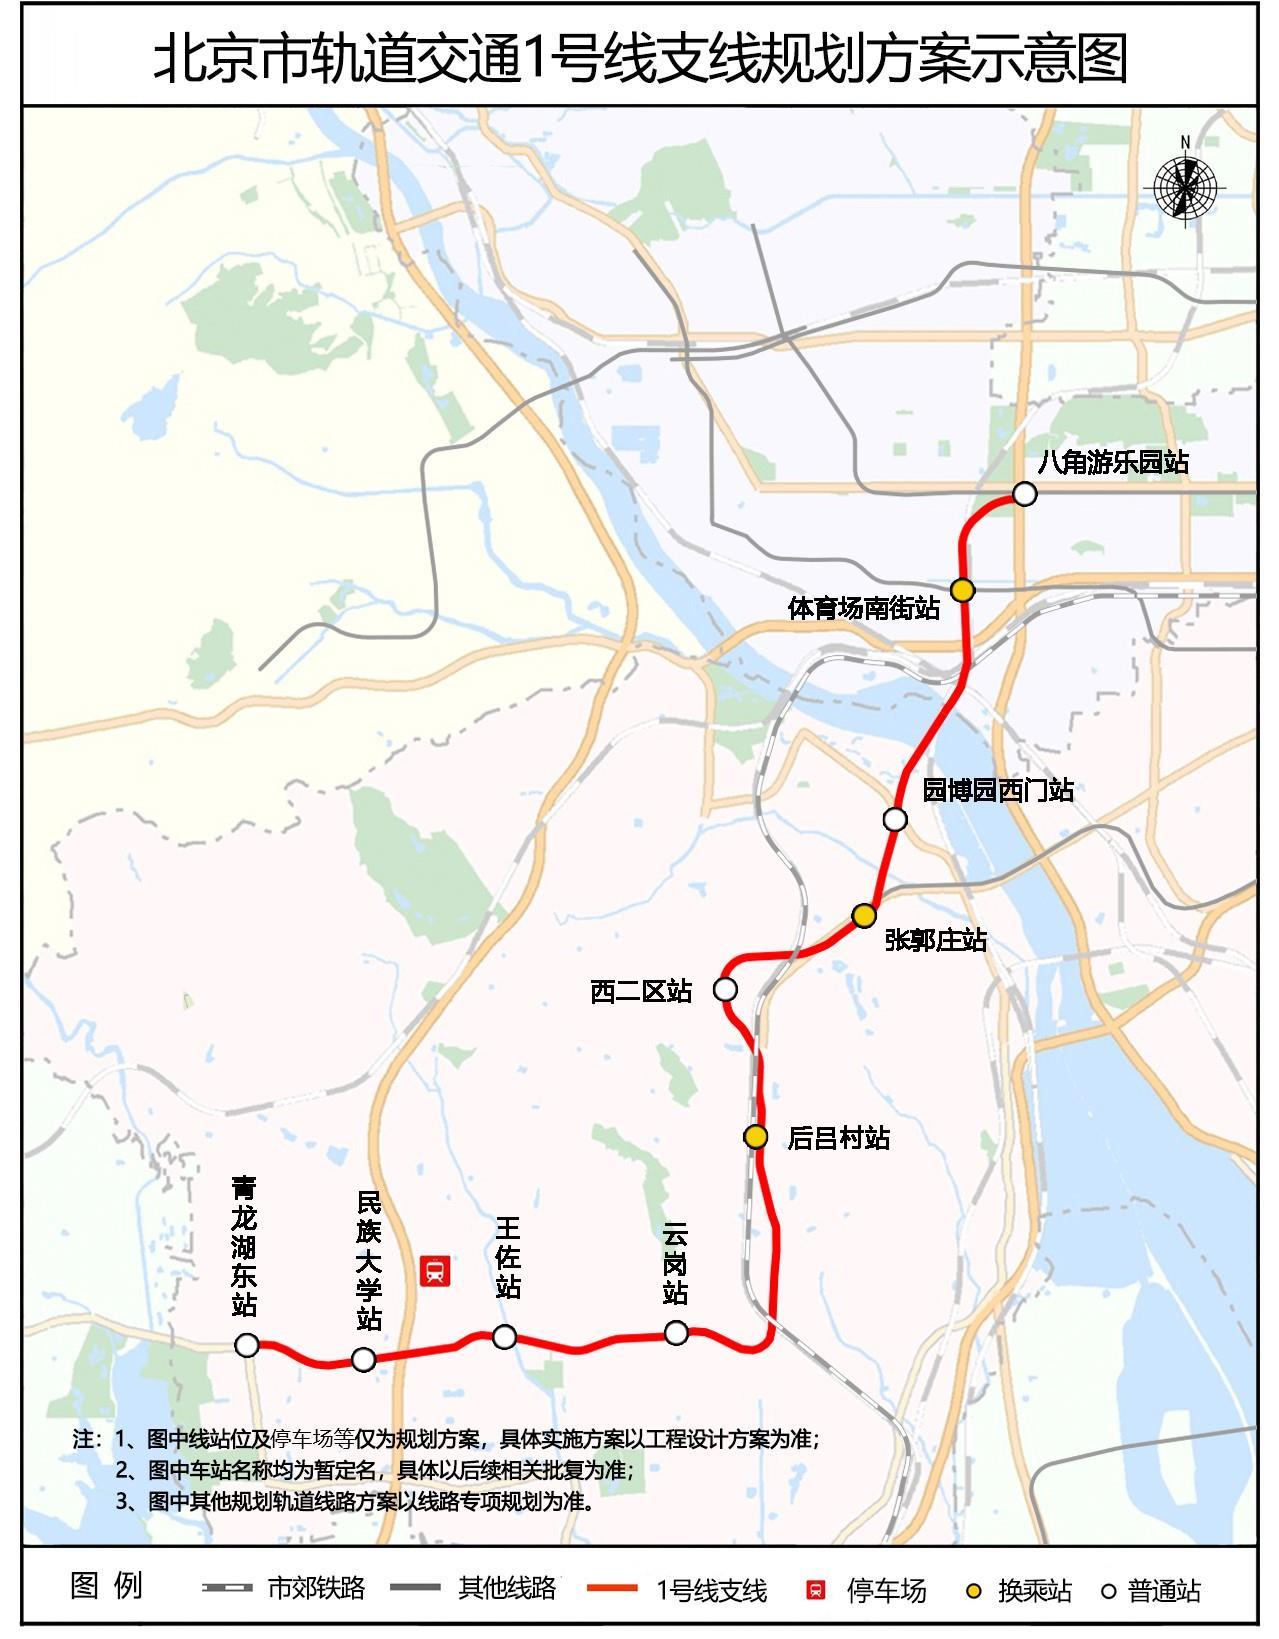 北京地铁1号线支线将下穿永定河,全线新建9座车站